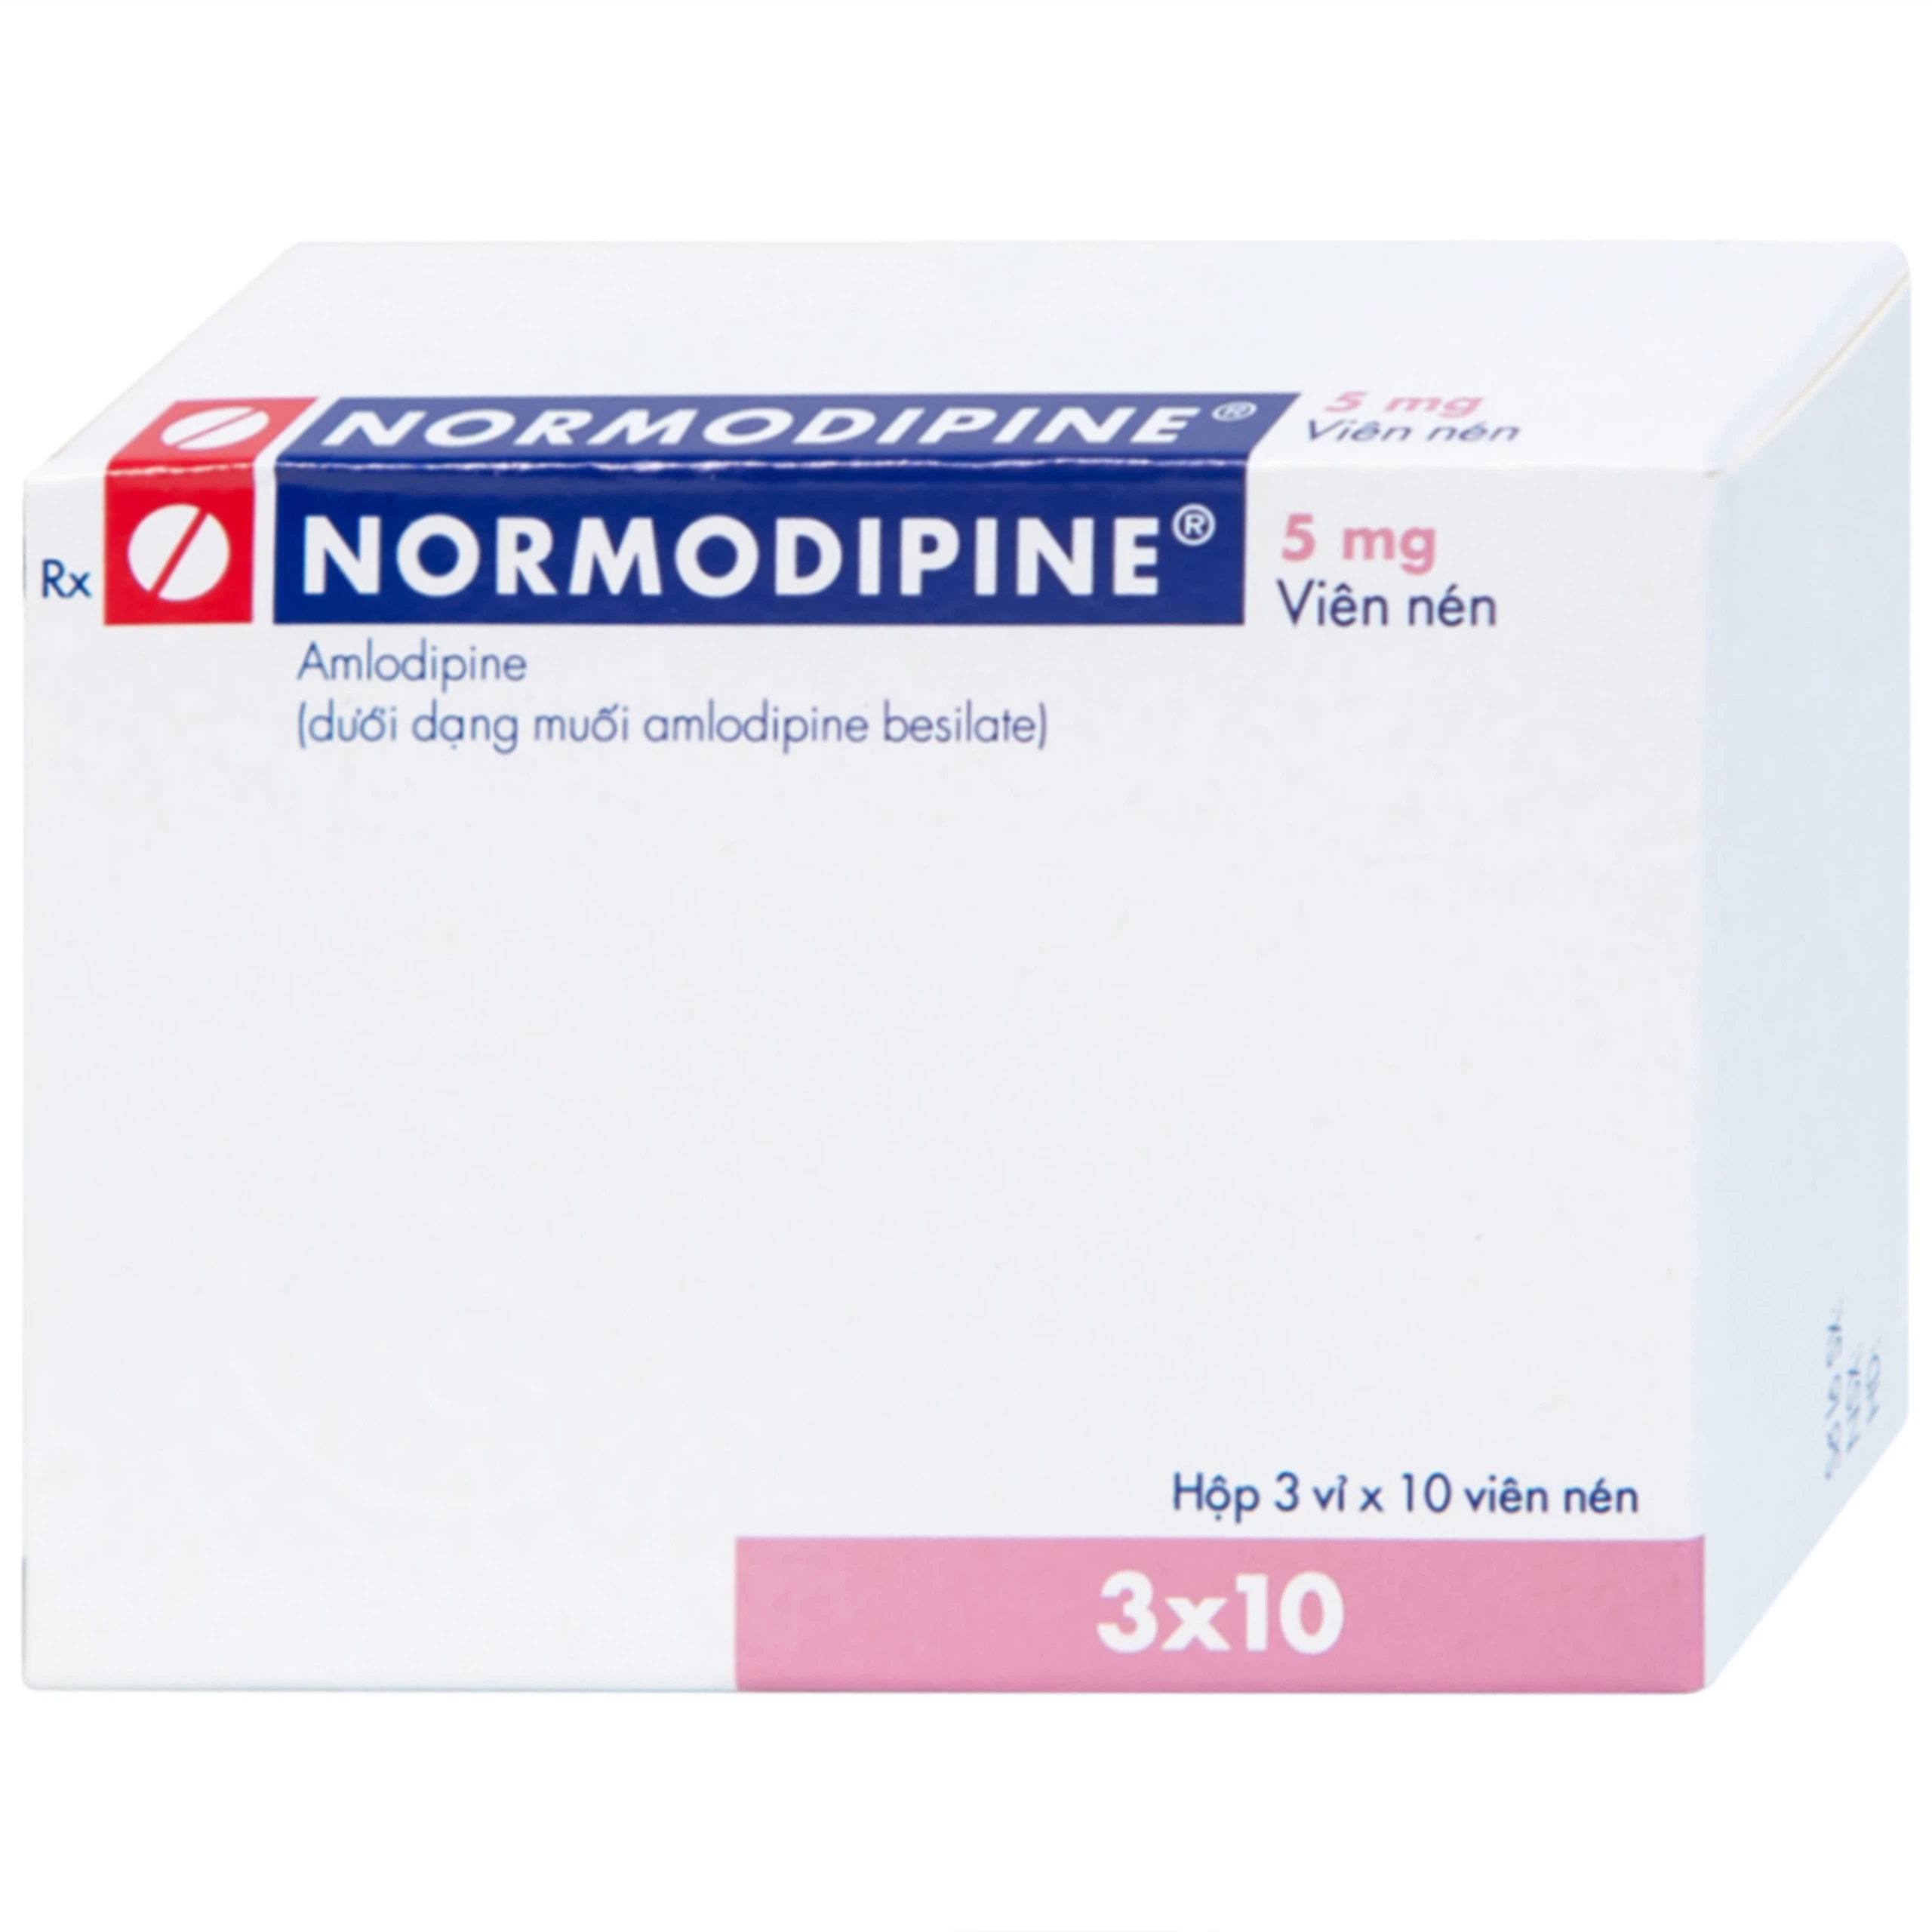 Viên nén Normodipine 5mg Gedeon điều trị tăng huyết áp, đau thắt ngực ổn định (3 vỉ x 10 viên)